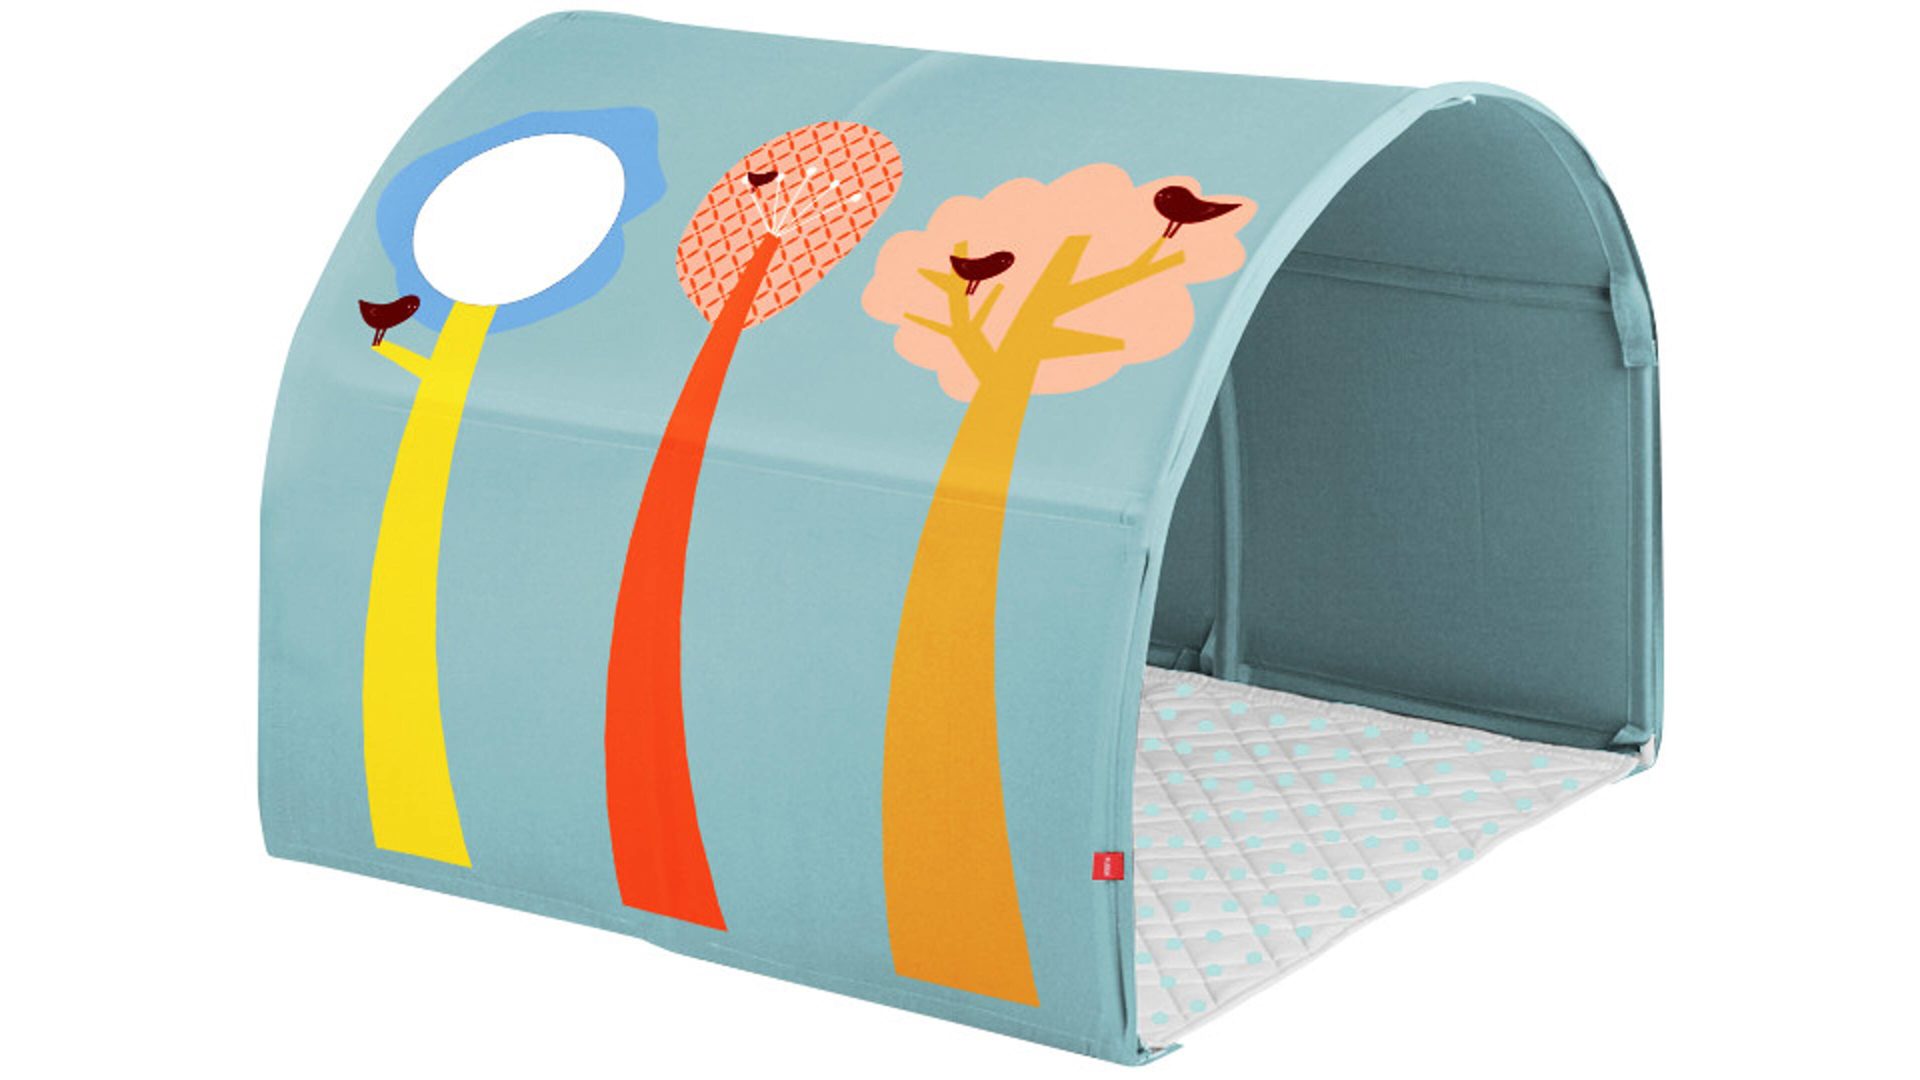 Betttunnel Flexa aus Stoff in Orange FLEXA Bett-Tunnel Forest bedruckter Baumwollstoff – Breite ca. 90 cm